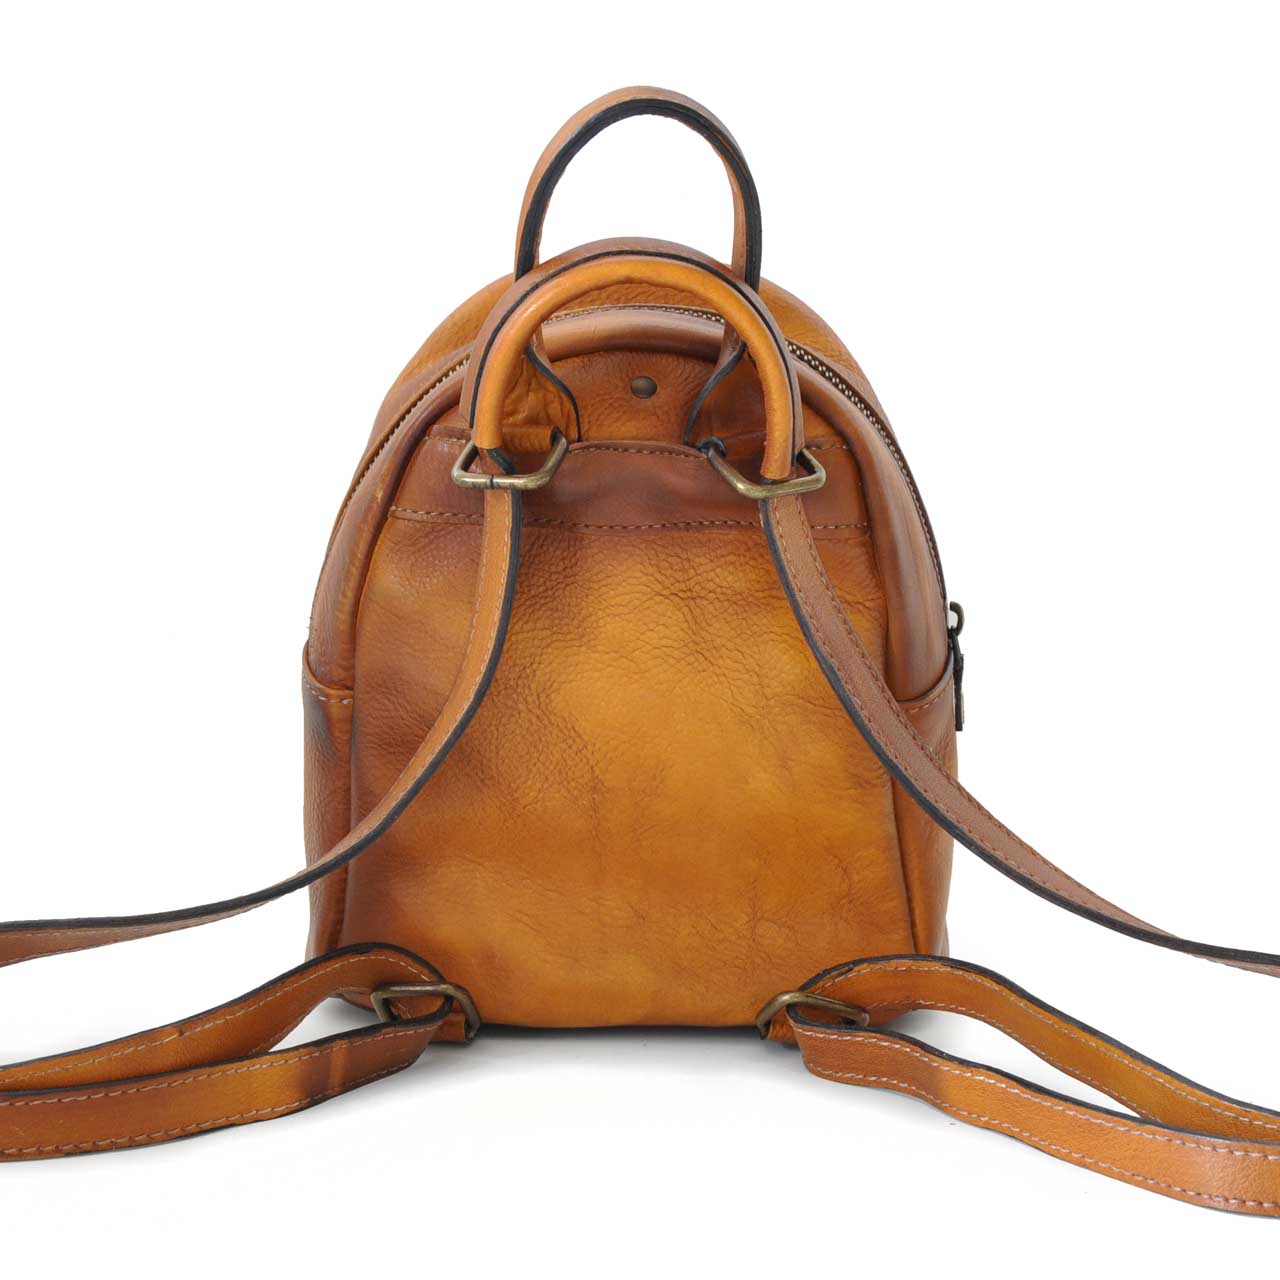 Pratesi Montegiovi Backpack in genuine Italian leather - Montegiovi Backpack B186 Cherry